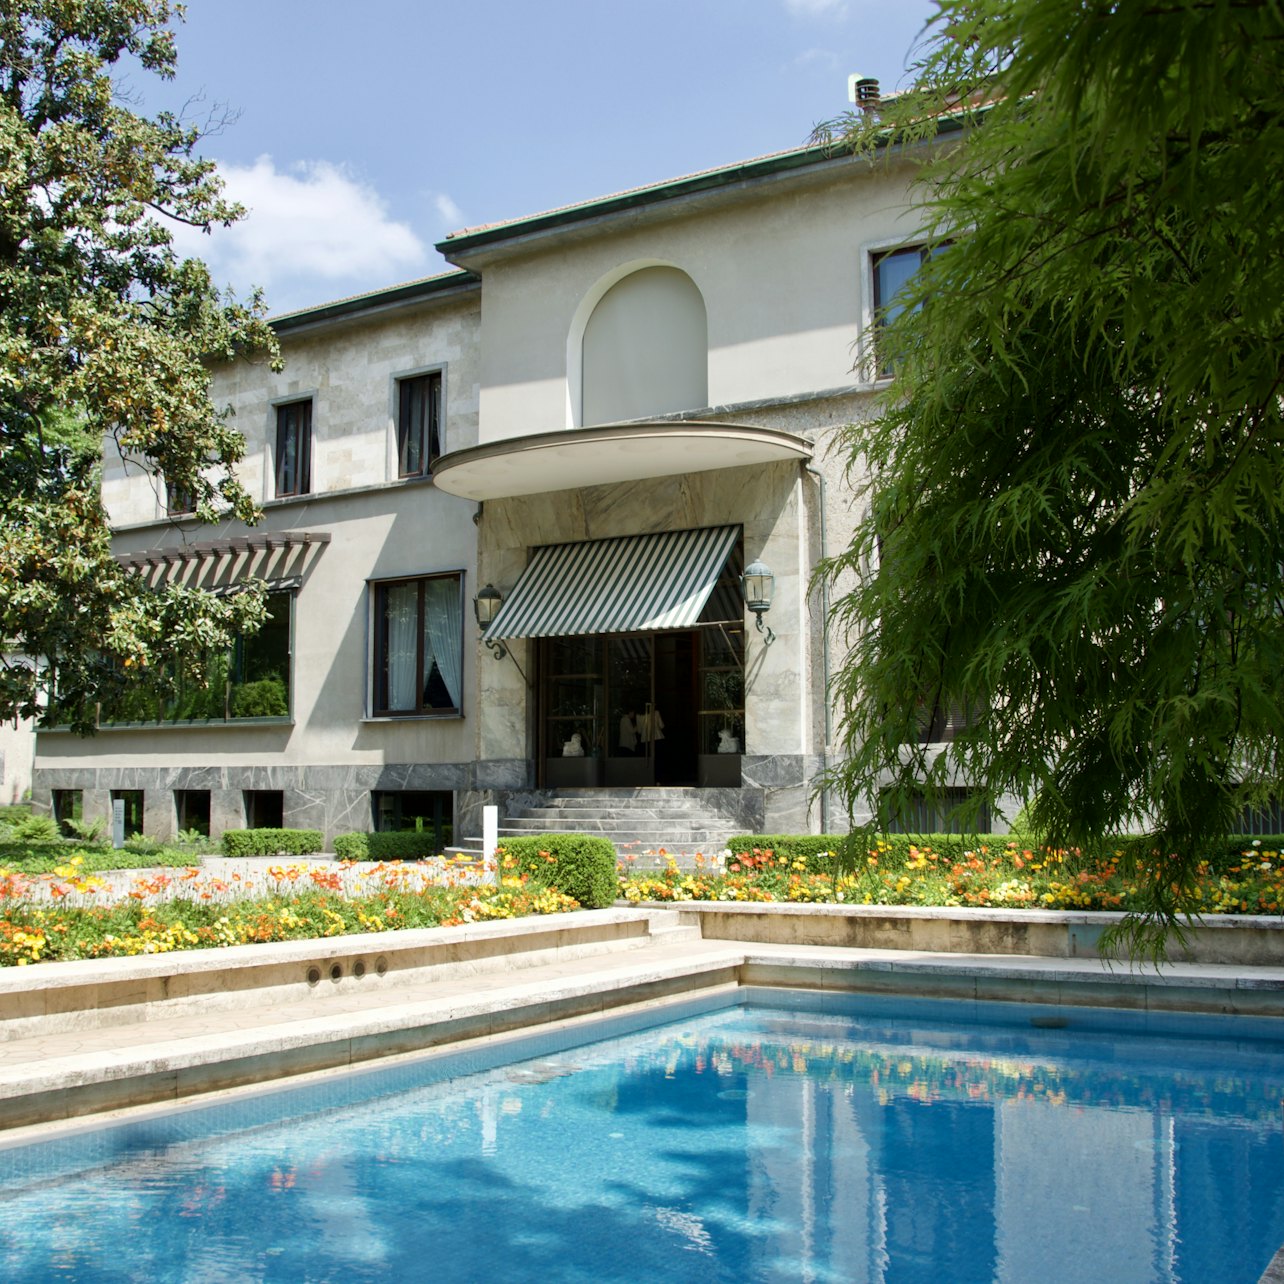 Villa Necchi Campiglio - Alojamientos en Milán